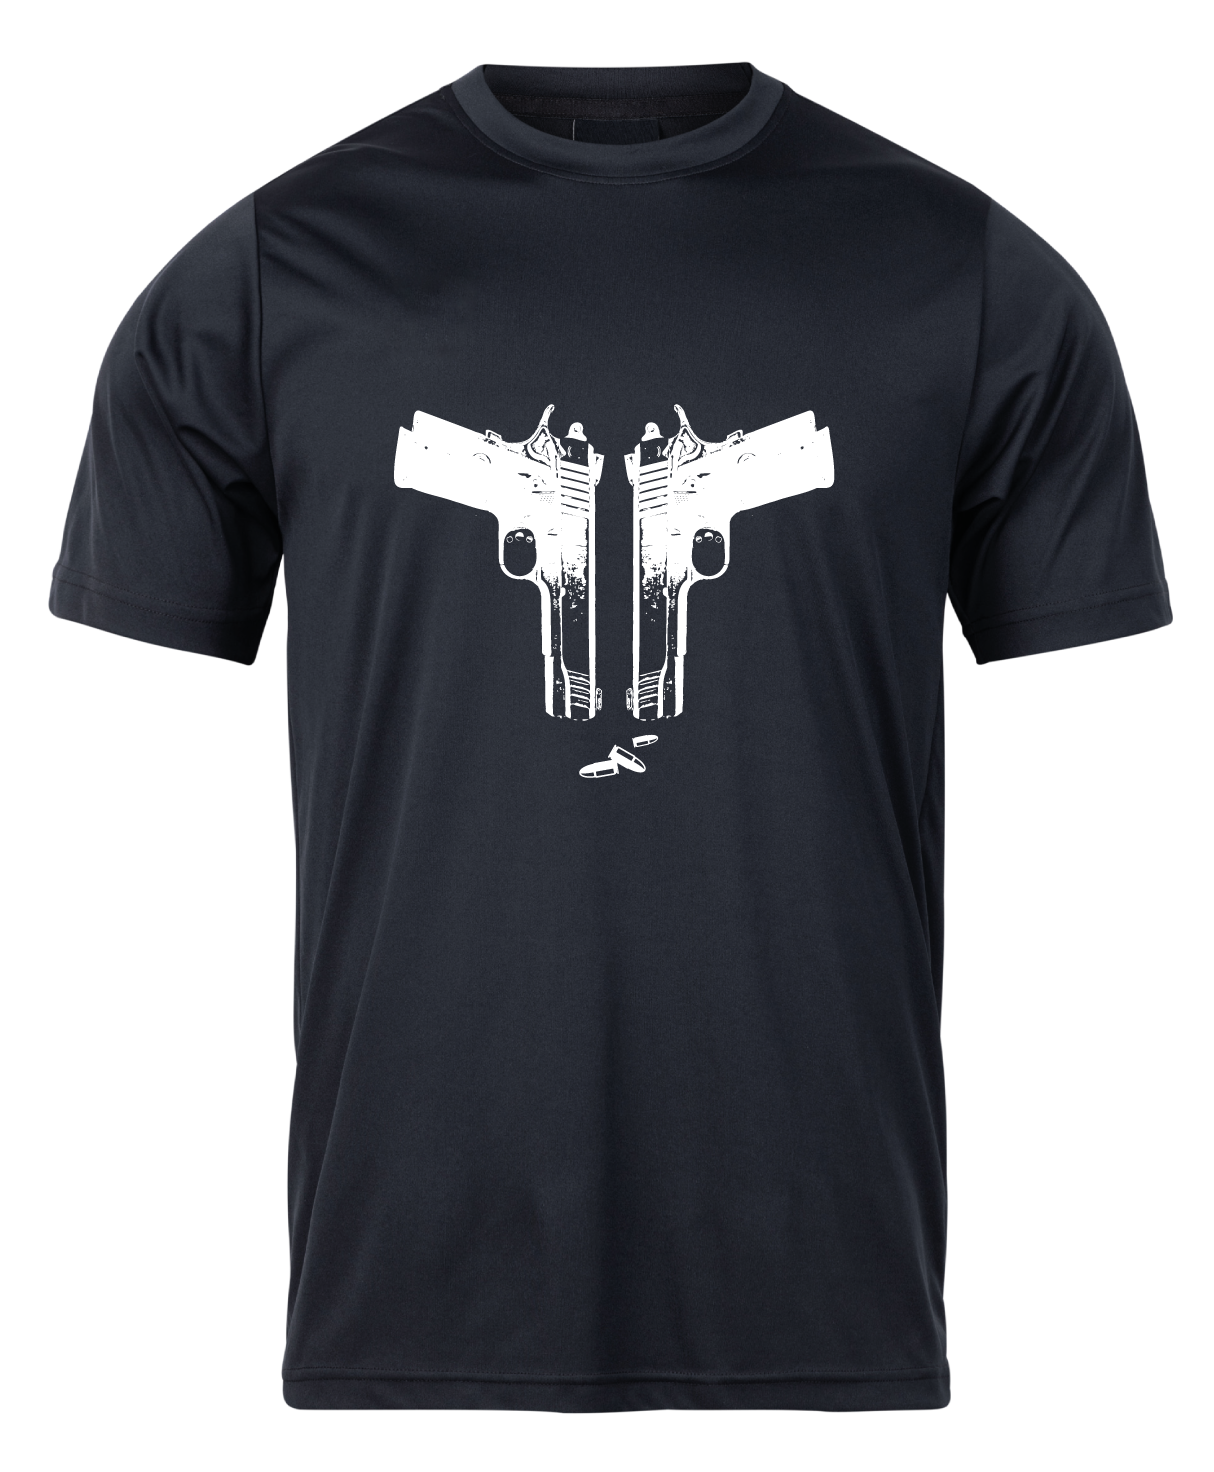 Pánske poľovnícke tričko TETRAO zbrane - čierne   XL